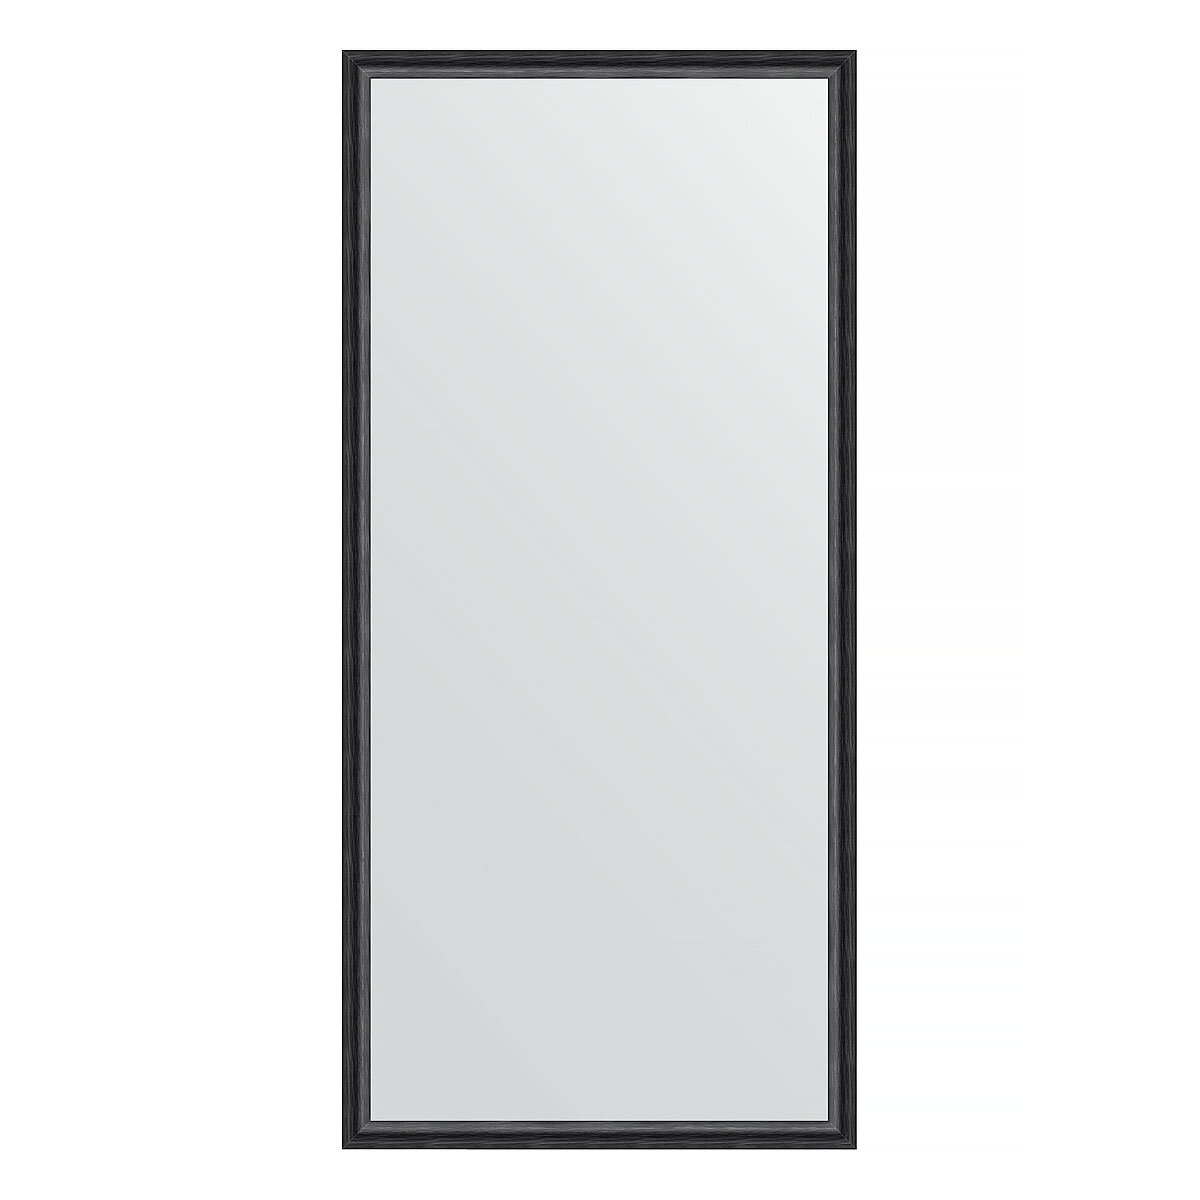 Зеркало настенное EVOFORM в багетной раме чёрный дуб, 70х150 см, для гостиной, прихожей, кабинета, спальни и ванной комнаты, BY 0768